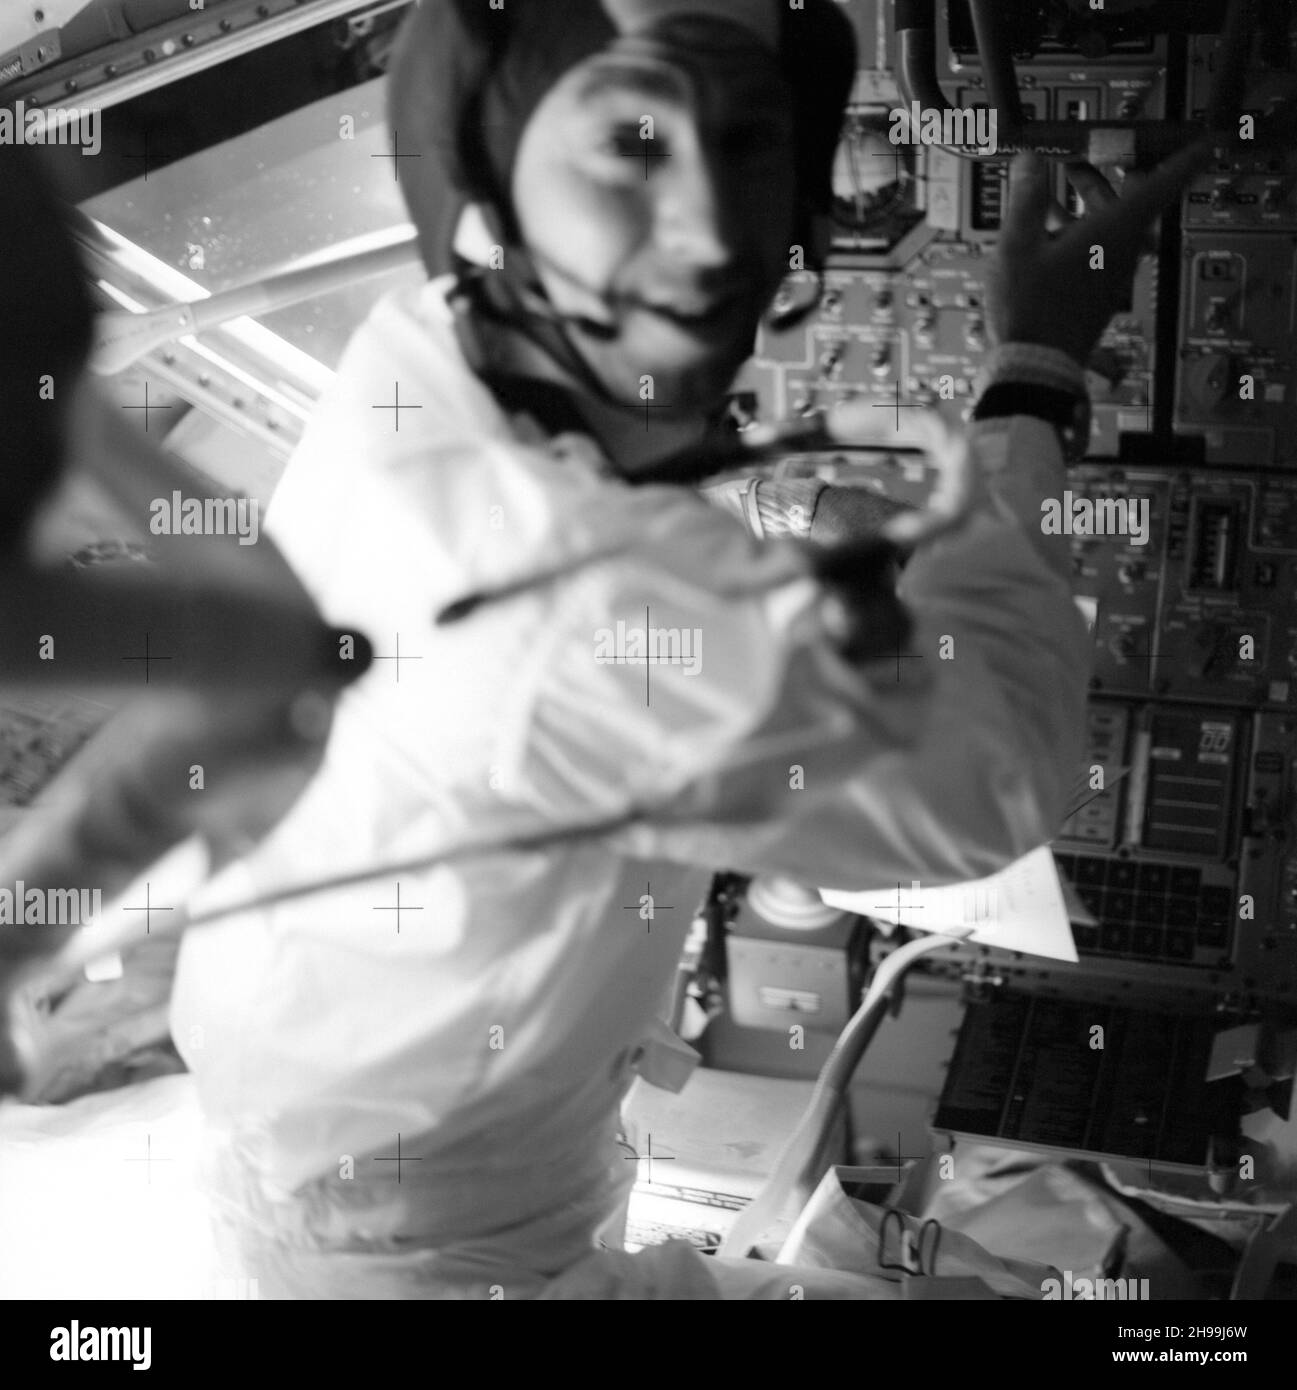 L'astronaute James A. Lovell Jr., commandant, à son poste dans le module lunaire (LM) pendant la mission Apollo 13 Banque D'Images